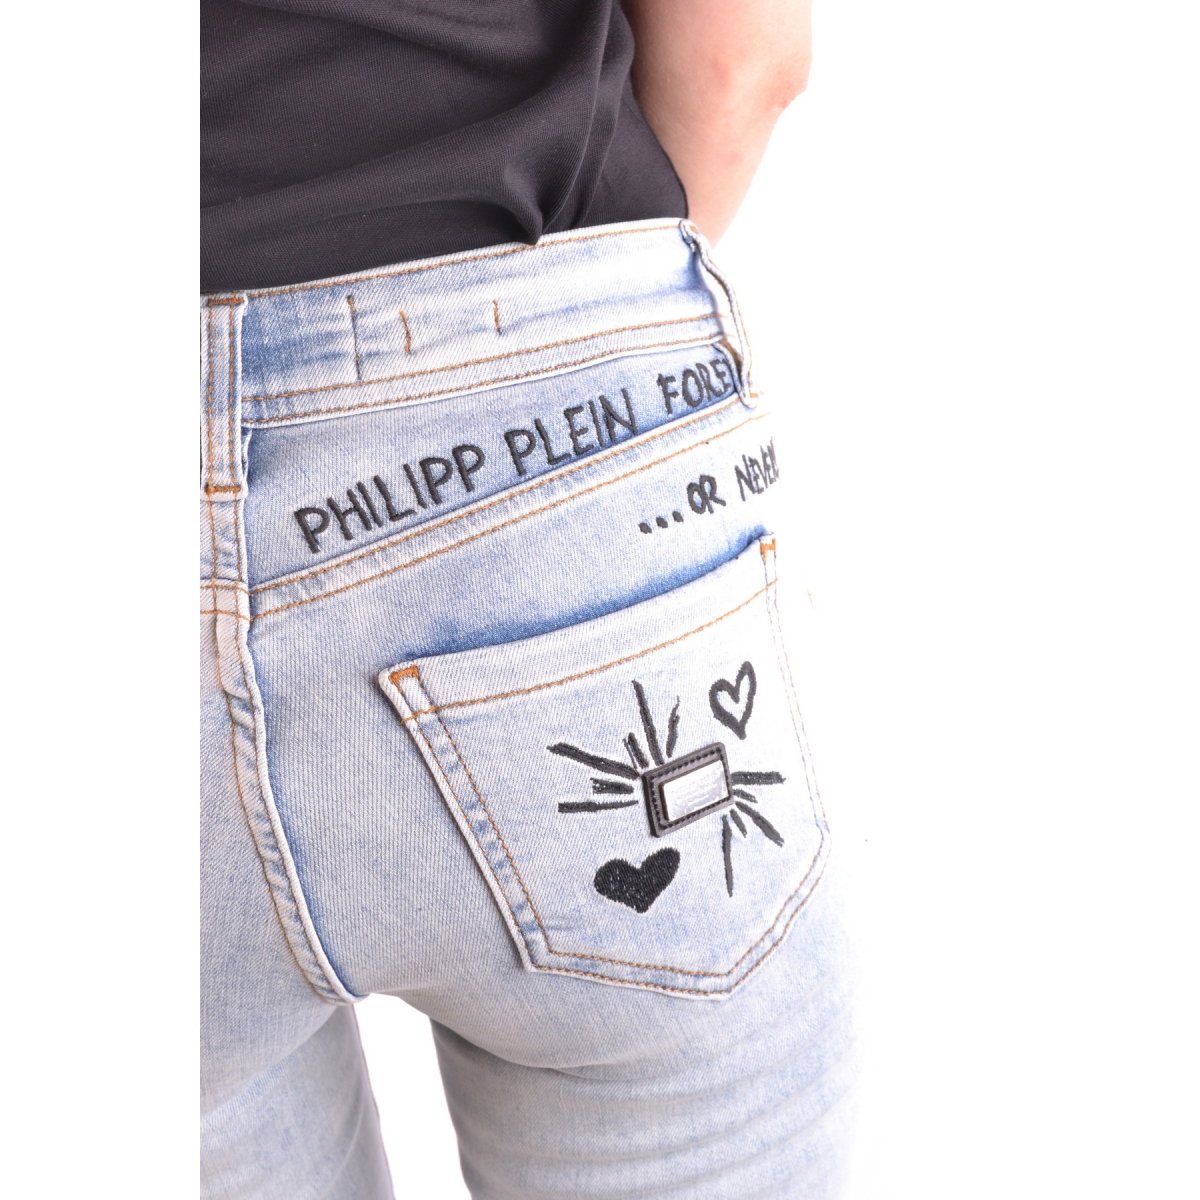 Philipp plein как отличить джинсы подделку